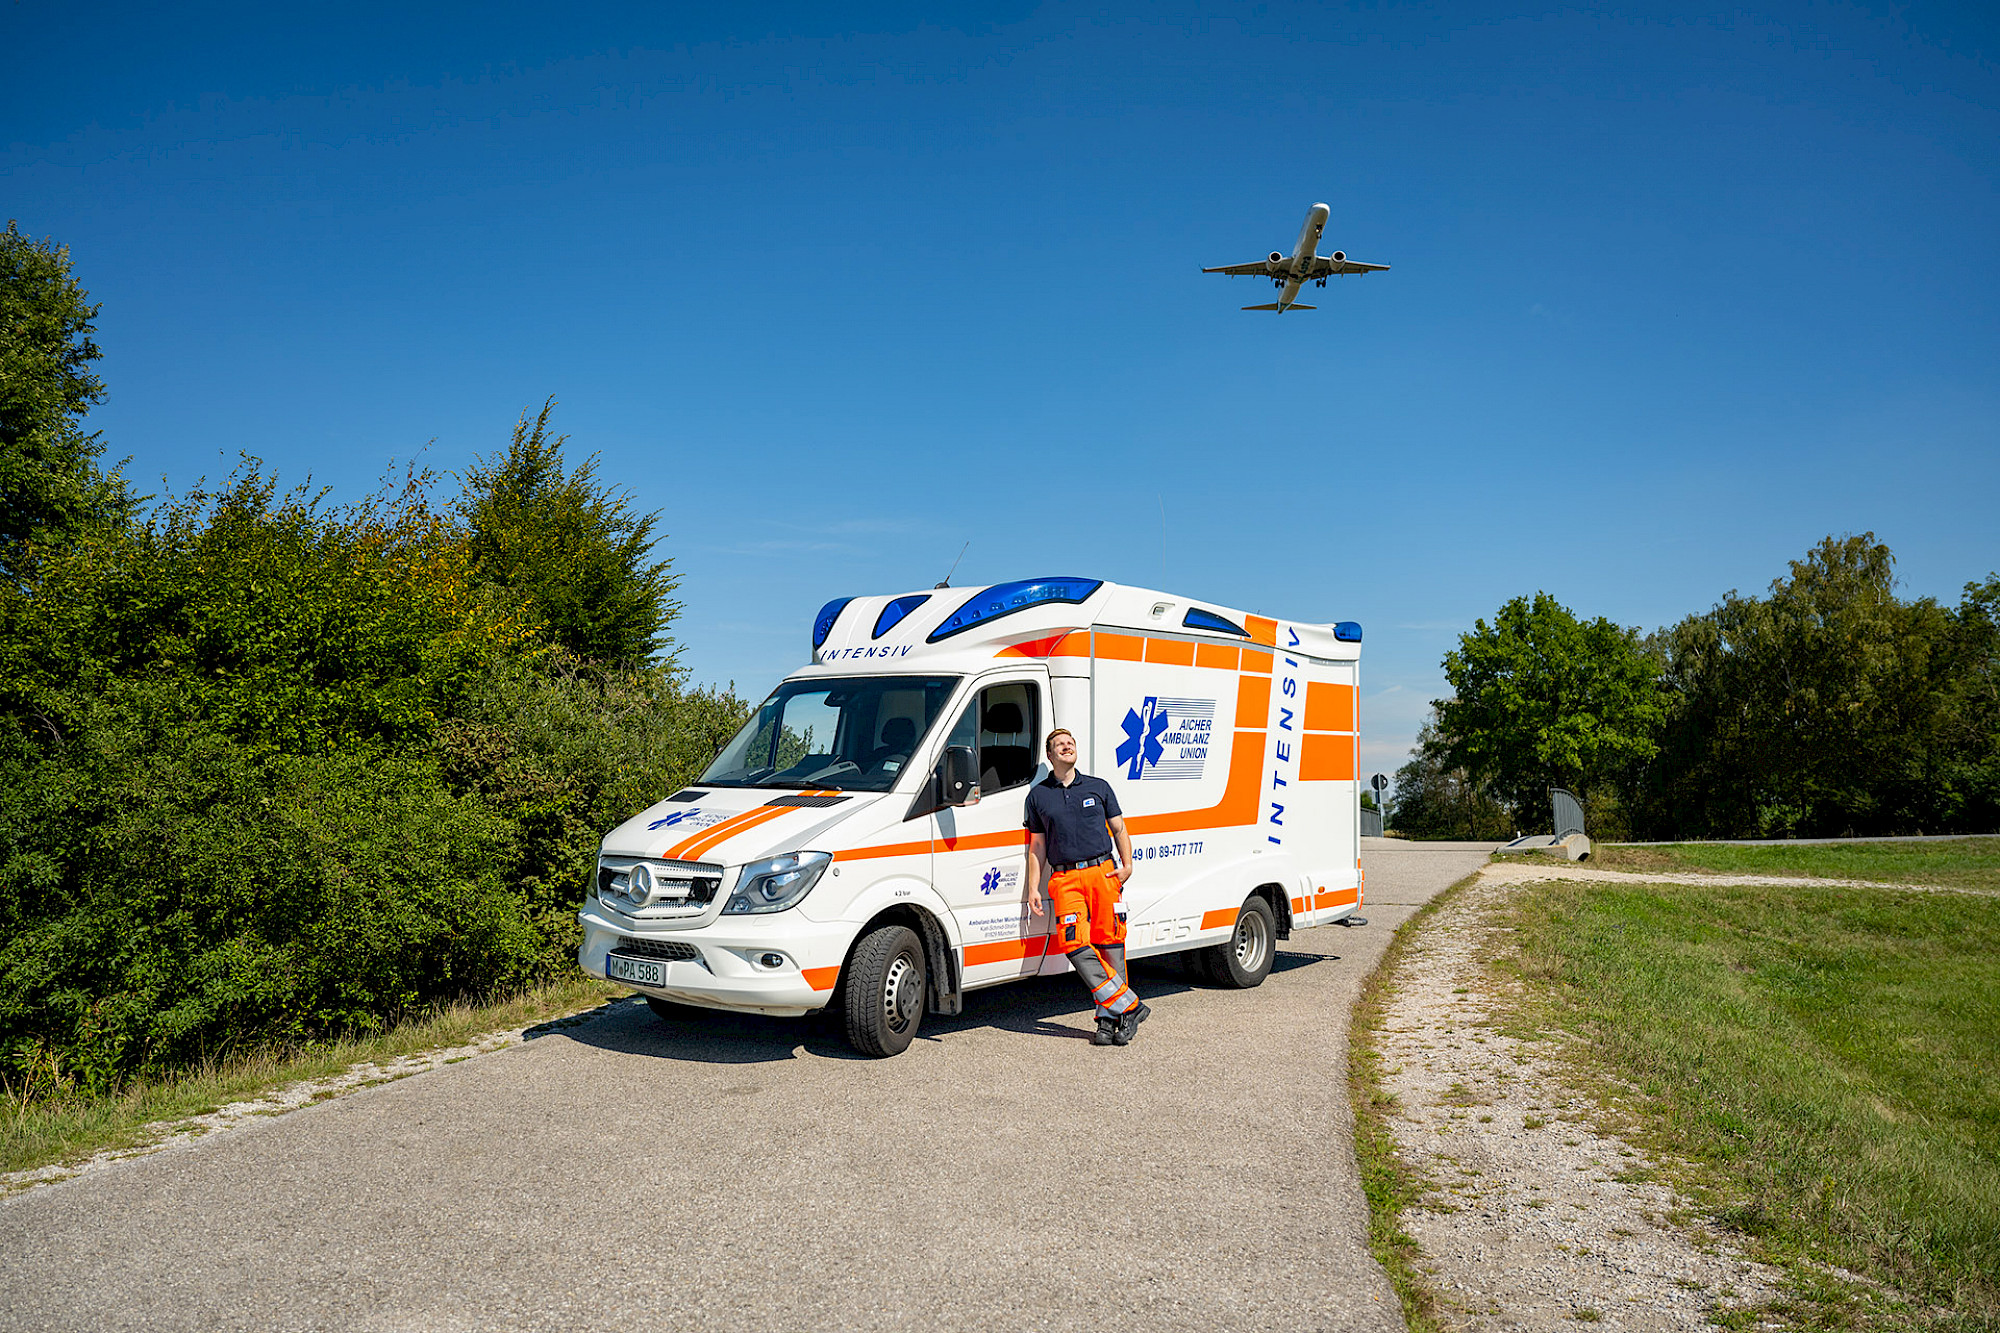 Ein Rettungssanitäter steht vor dem Rettungswagen, während im Hintergrund ein Flugzeug startet.